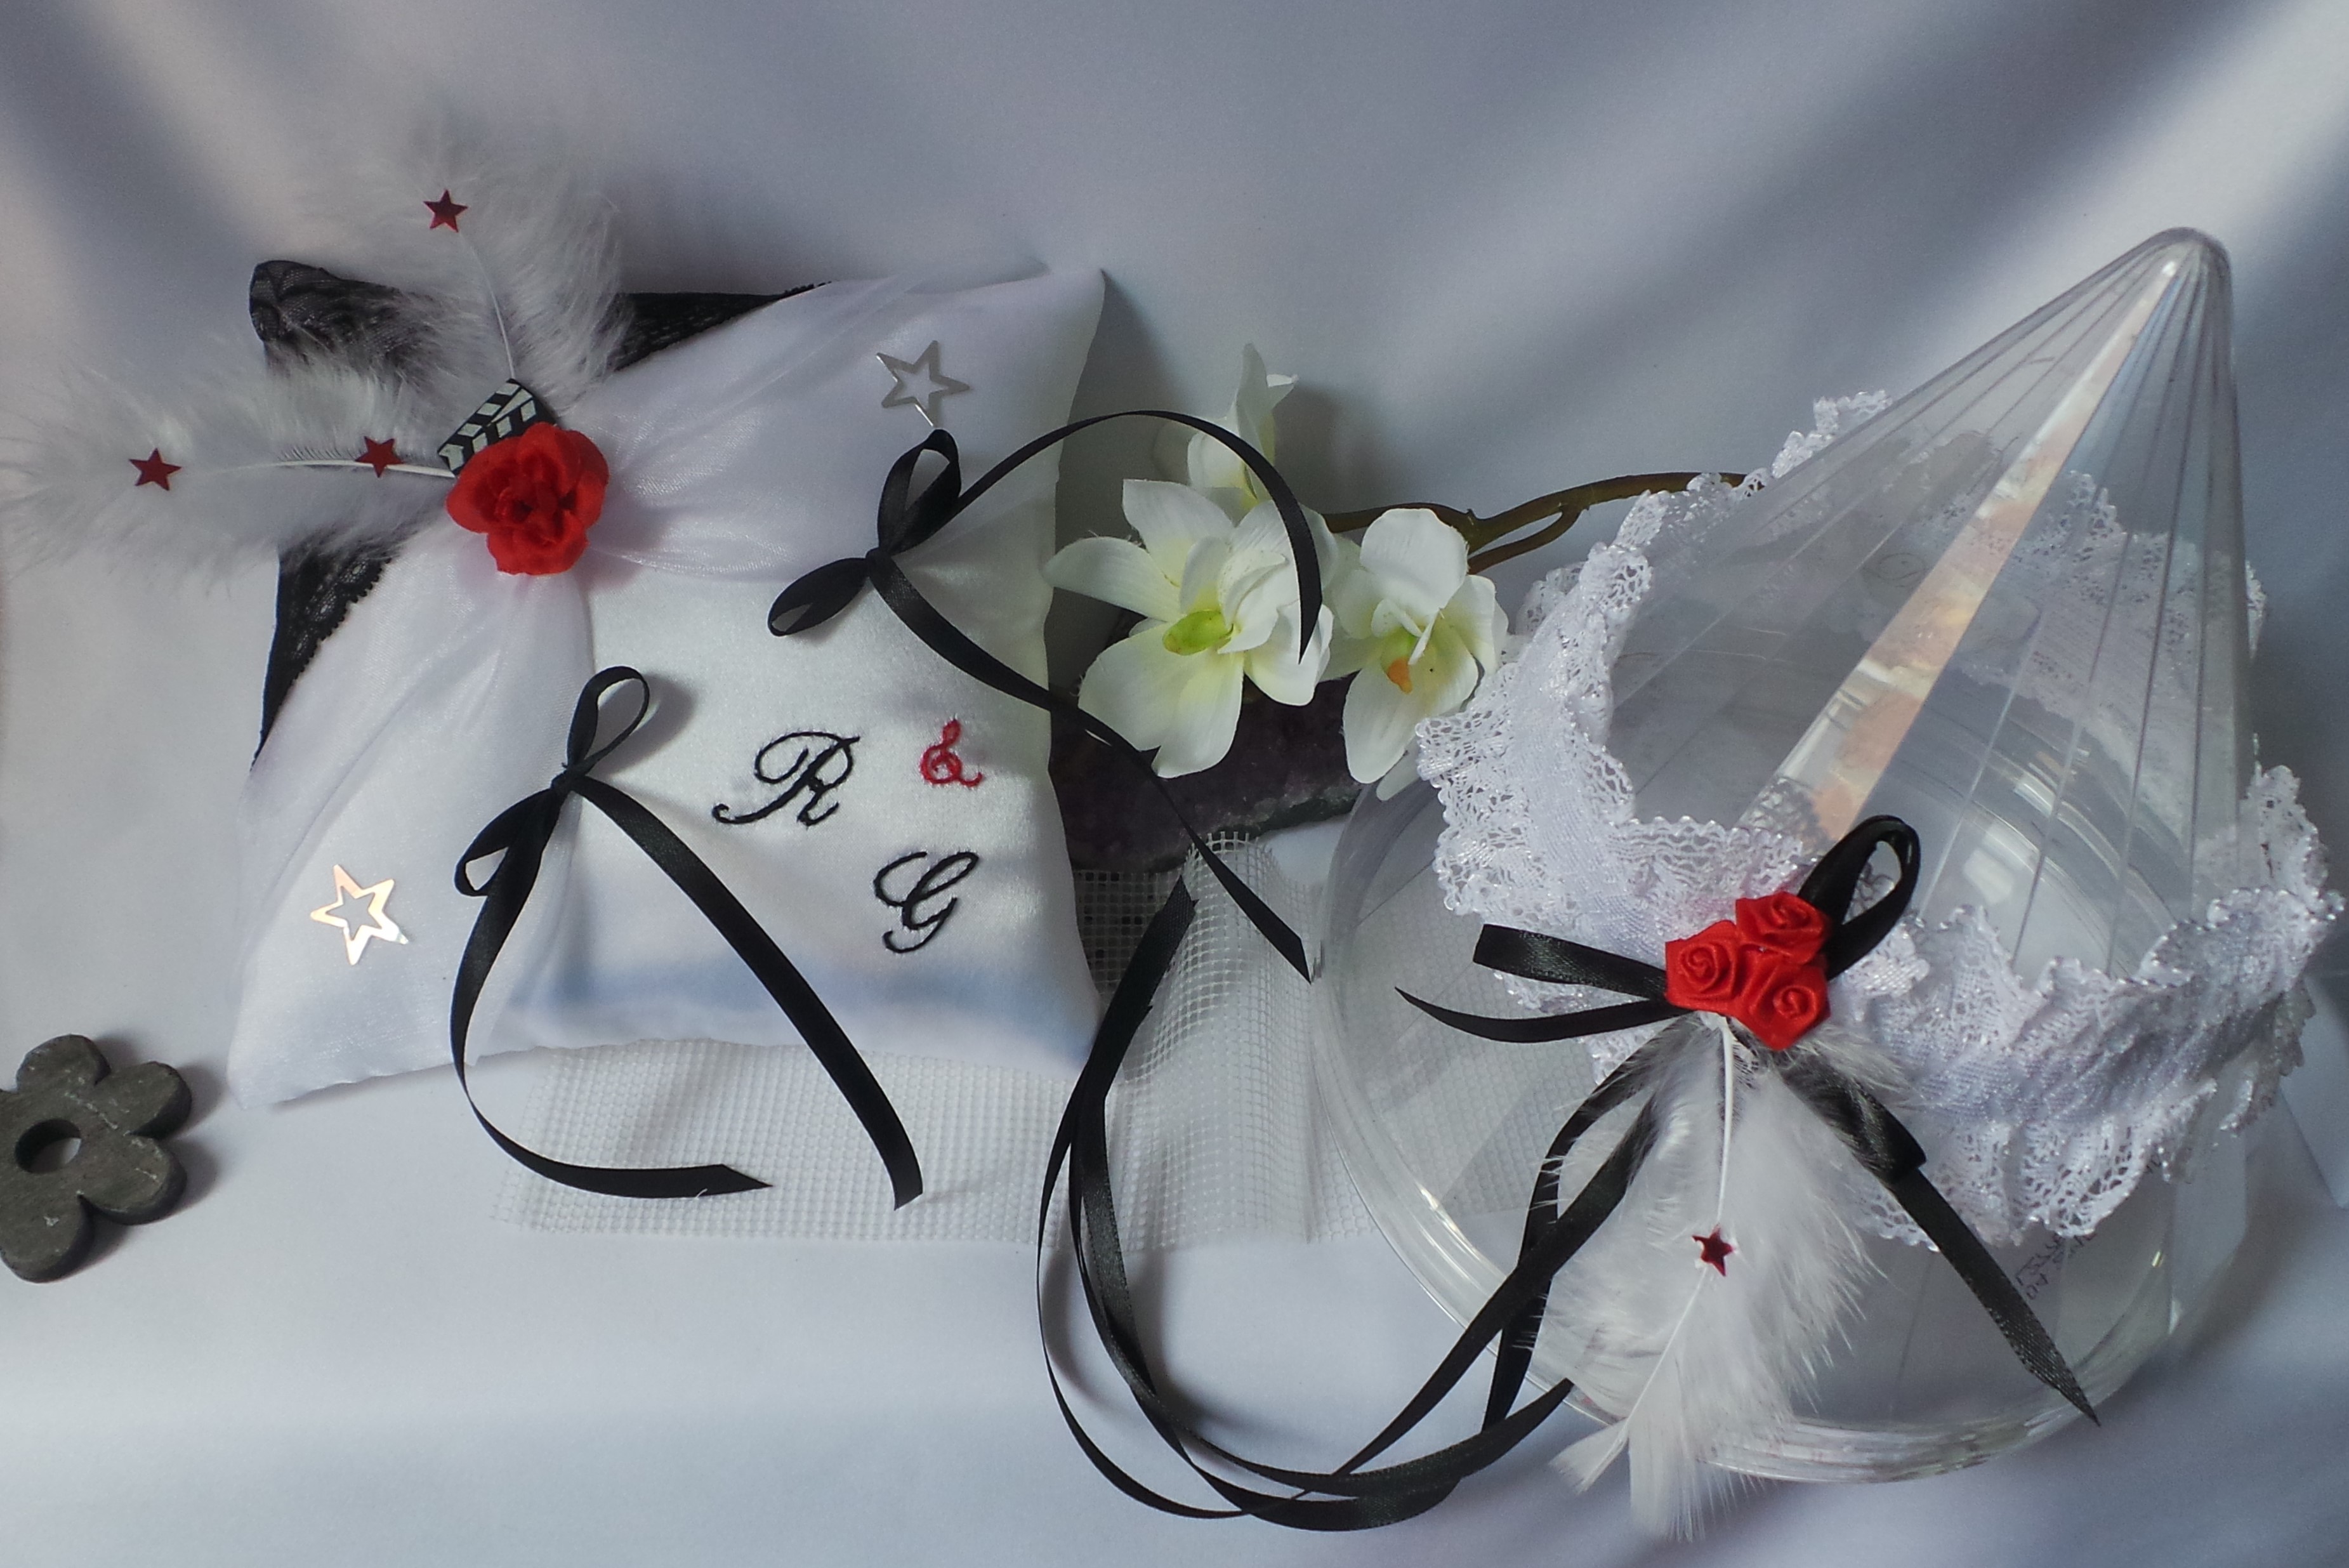 decoration mariage blanc noir rouge thème musique coussin porte alliance jarretière